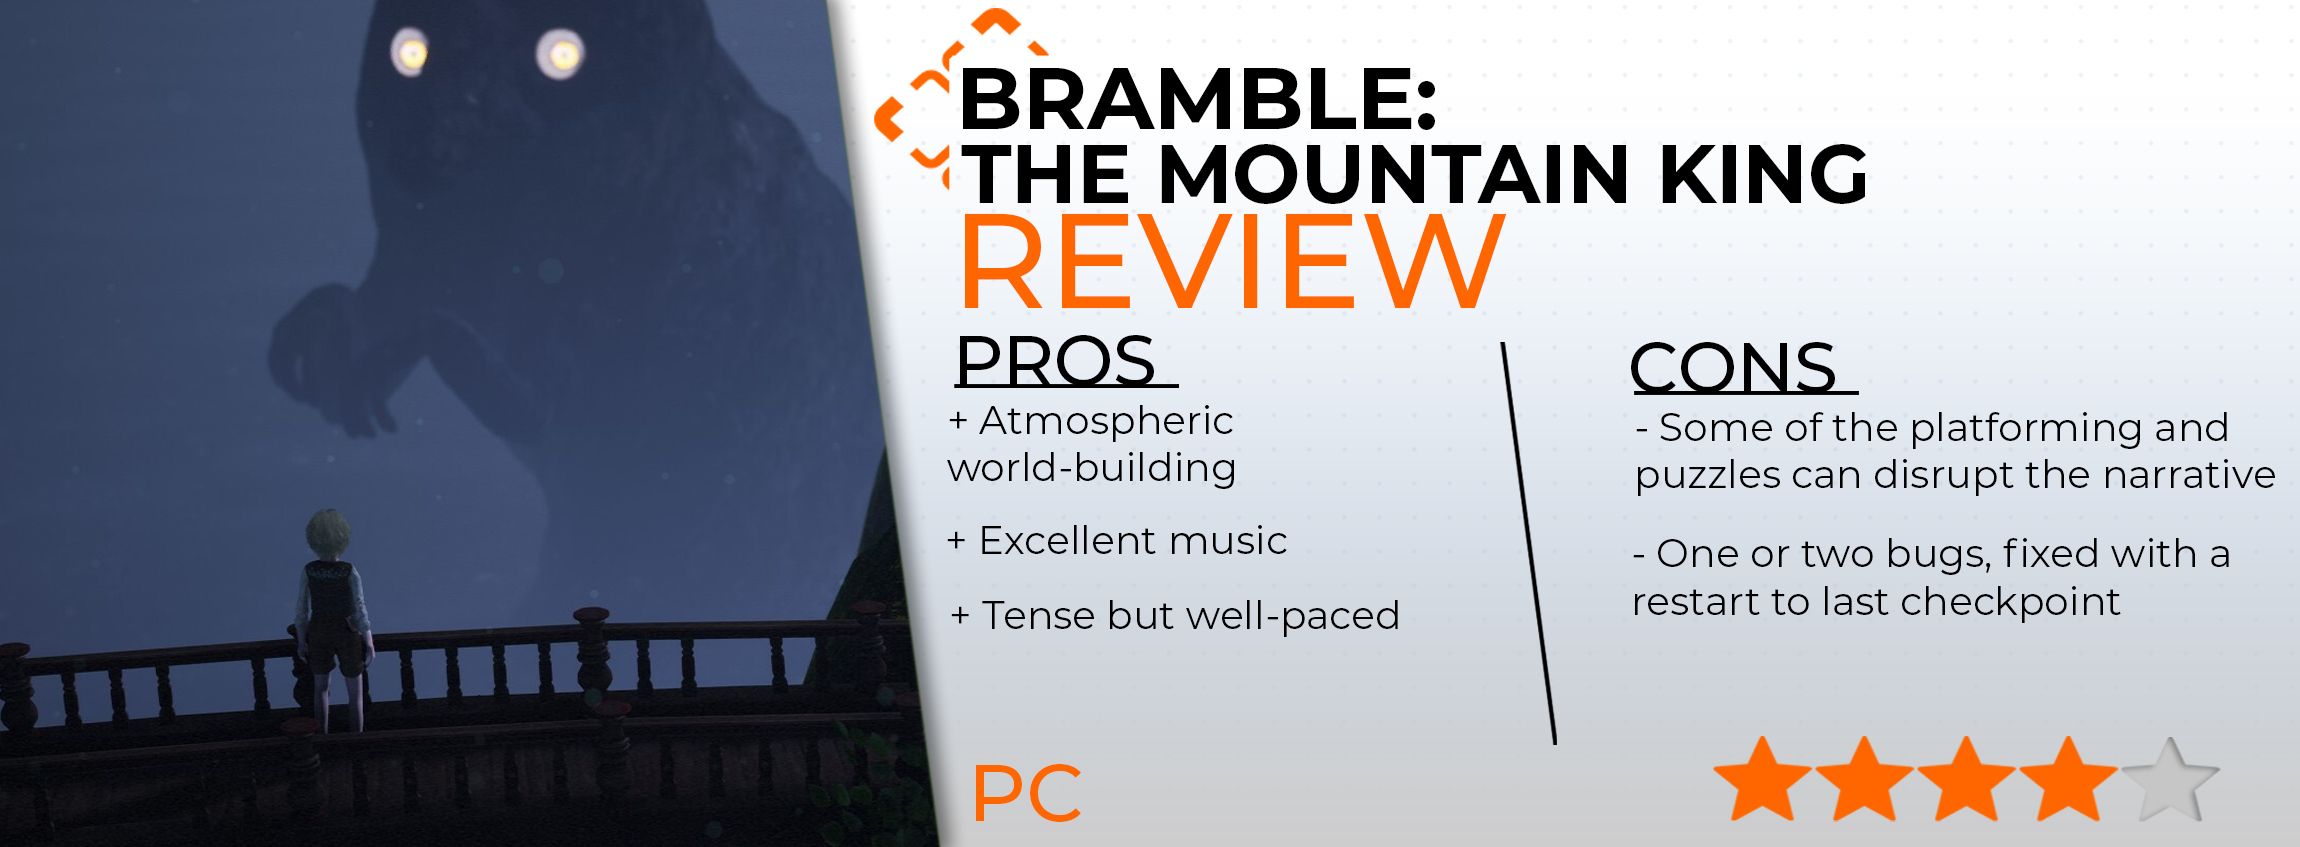 bramble_review_card